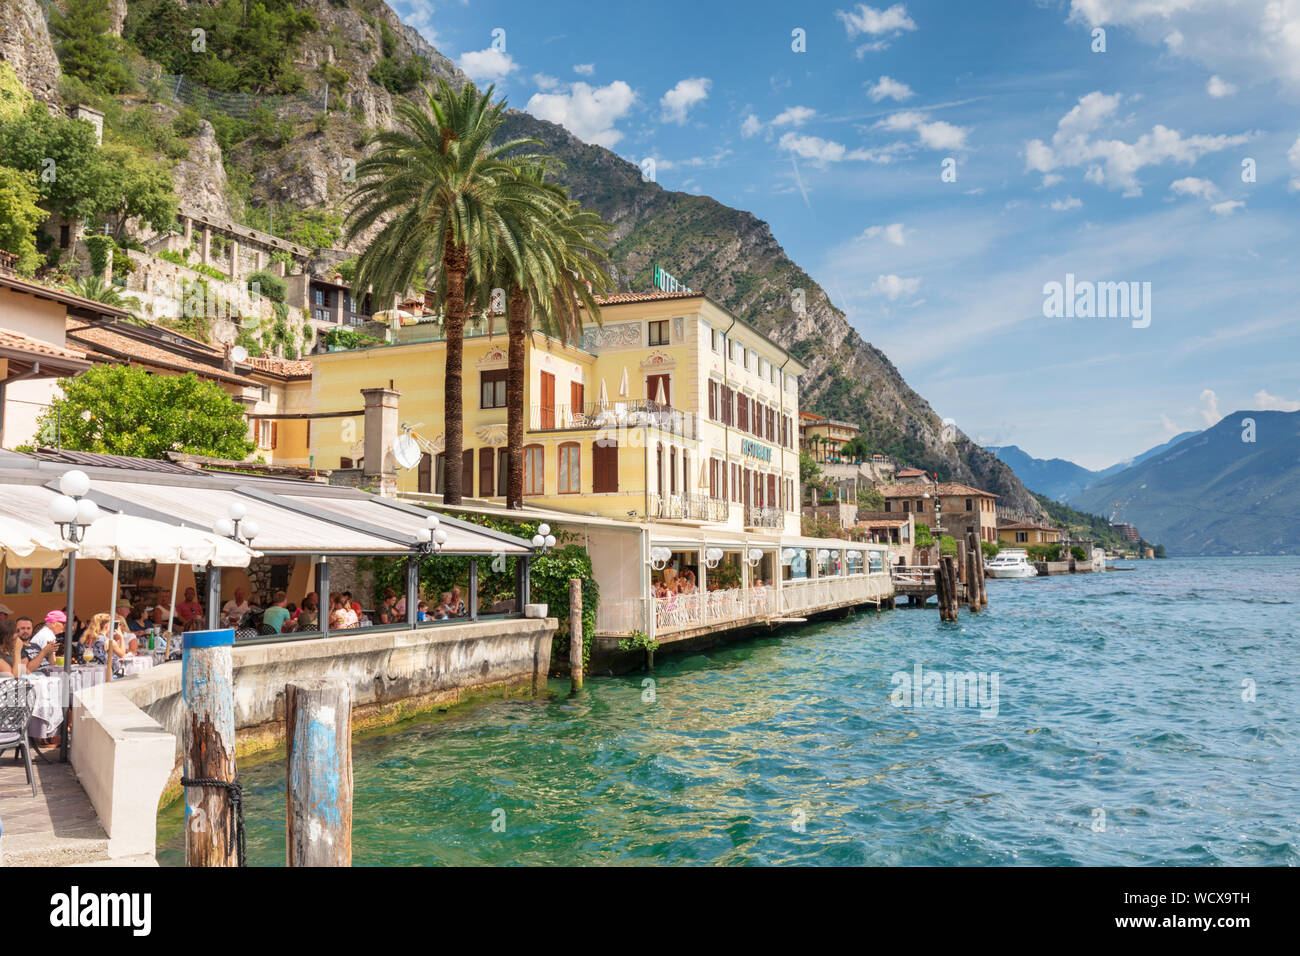 Limone sul Garda, Lake Garda - cafes on the waterfront next to the Lake. Stock Photo